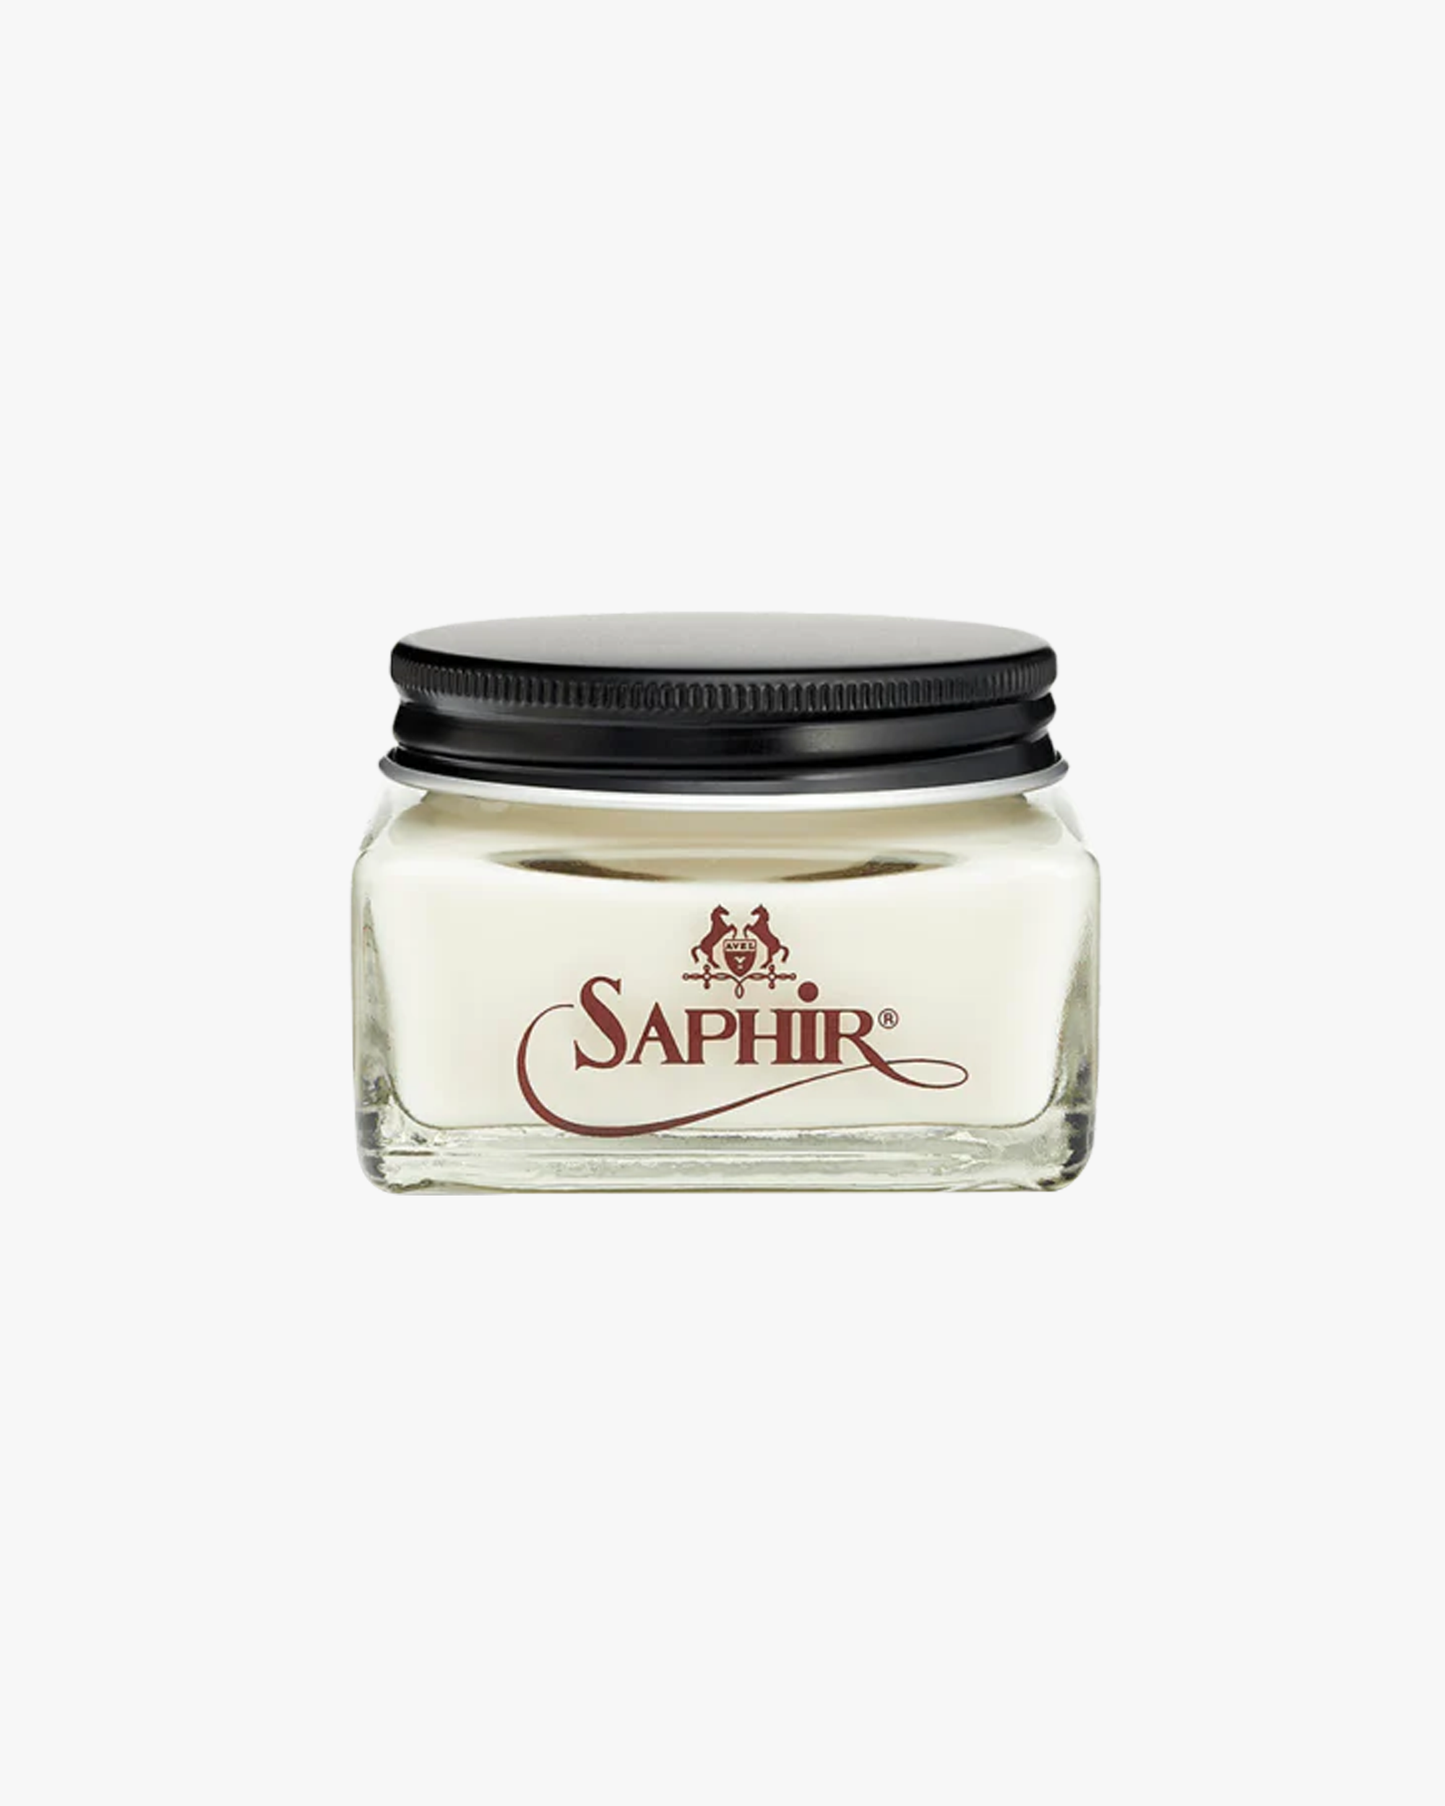 Saphir – Créme Renovateur